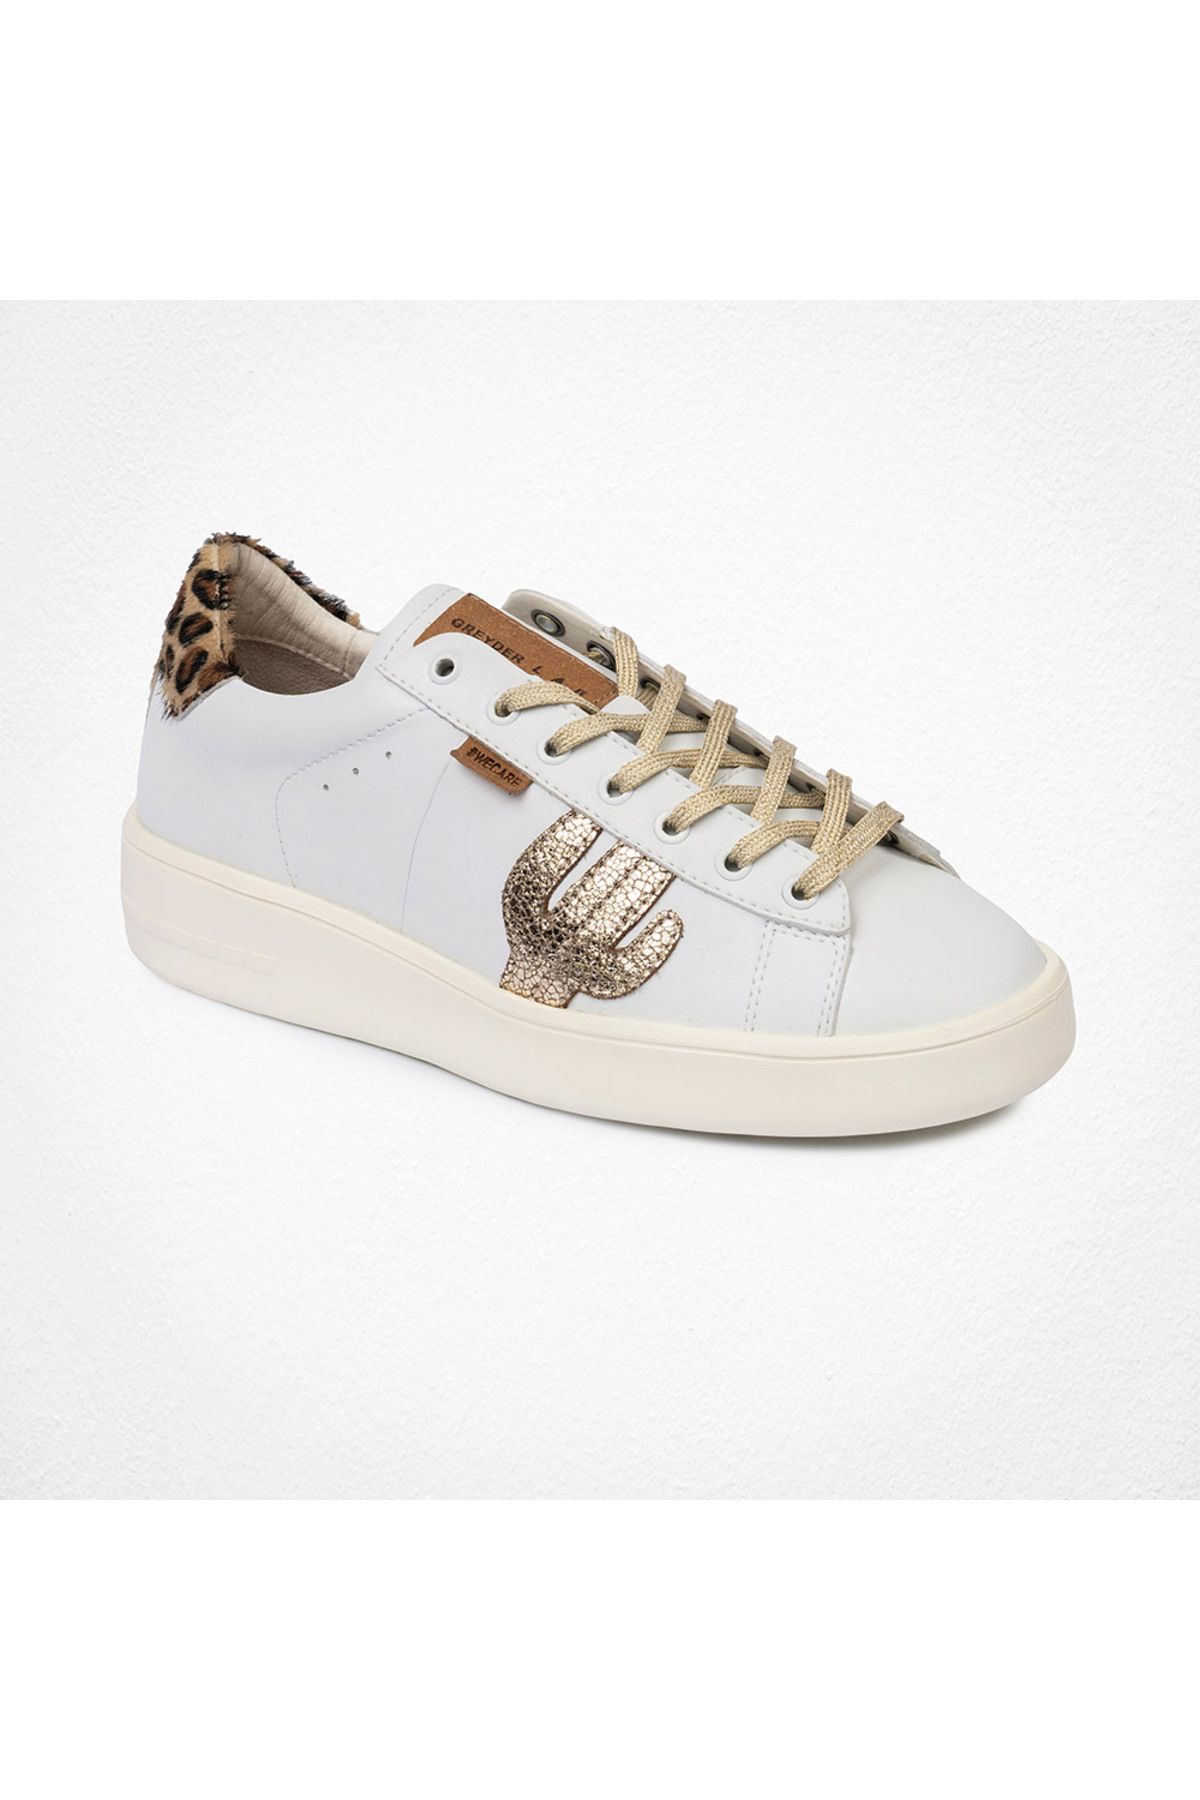 Greyder Lab Kadın Altın Hakiki Deri Sneaker Ayakkabı 4y2sa45201